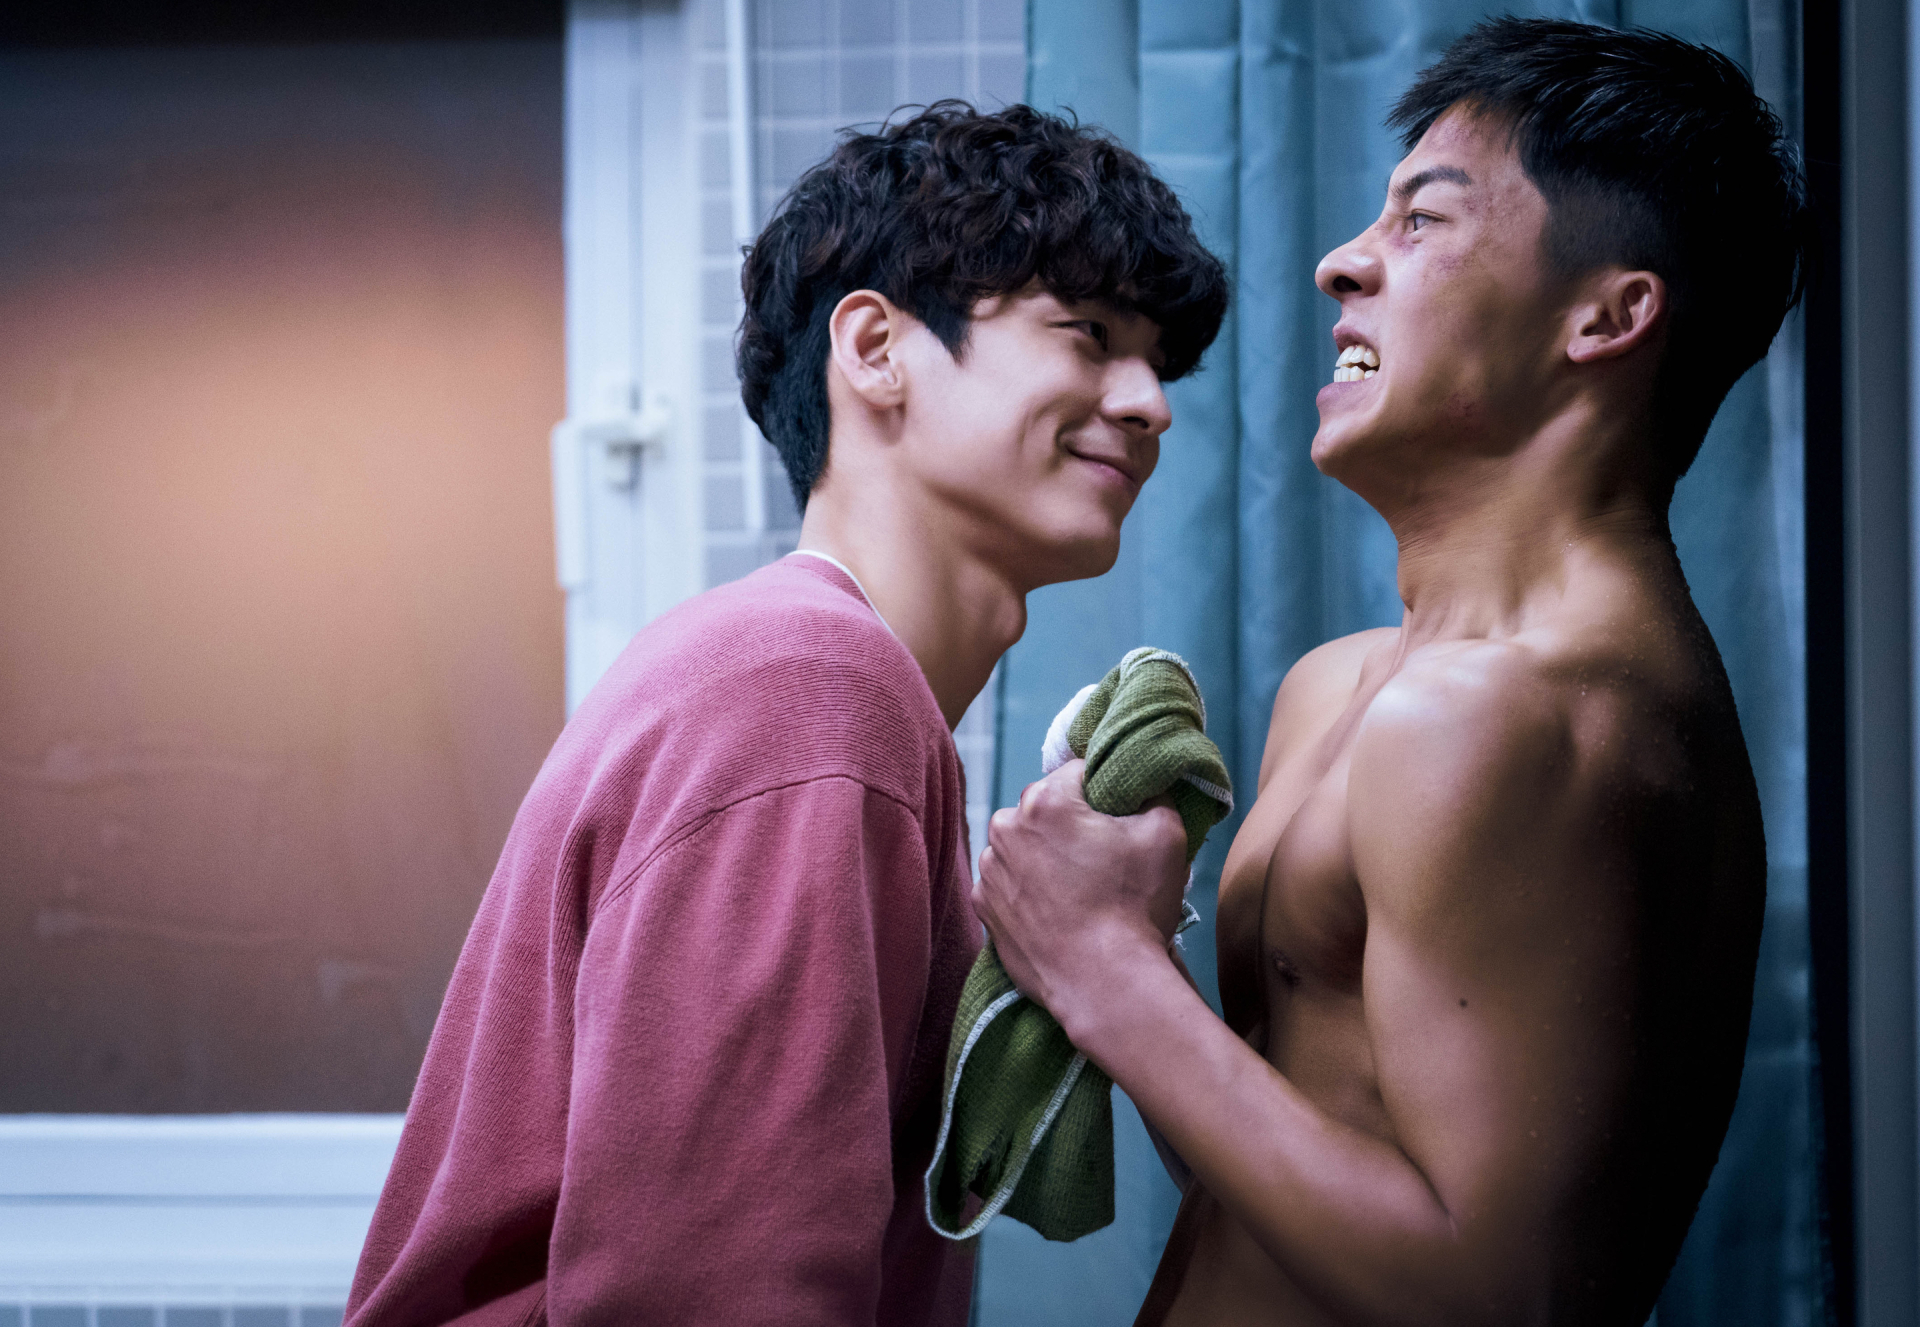 Bộ phim có 'cảnh nóng' của Hứa Quang Hán, doanh thu trăm tỷ sắp chính thức đổ bộ Netflix - ảnh 2